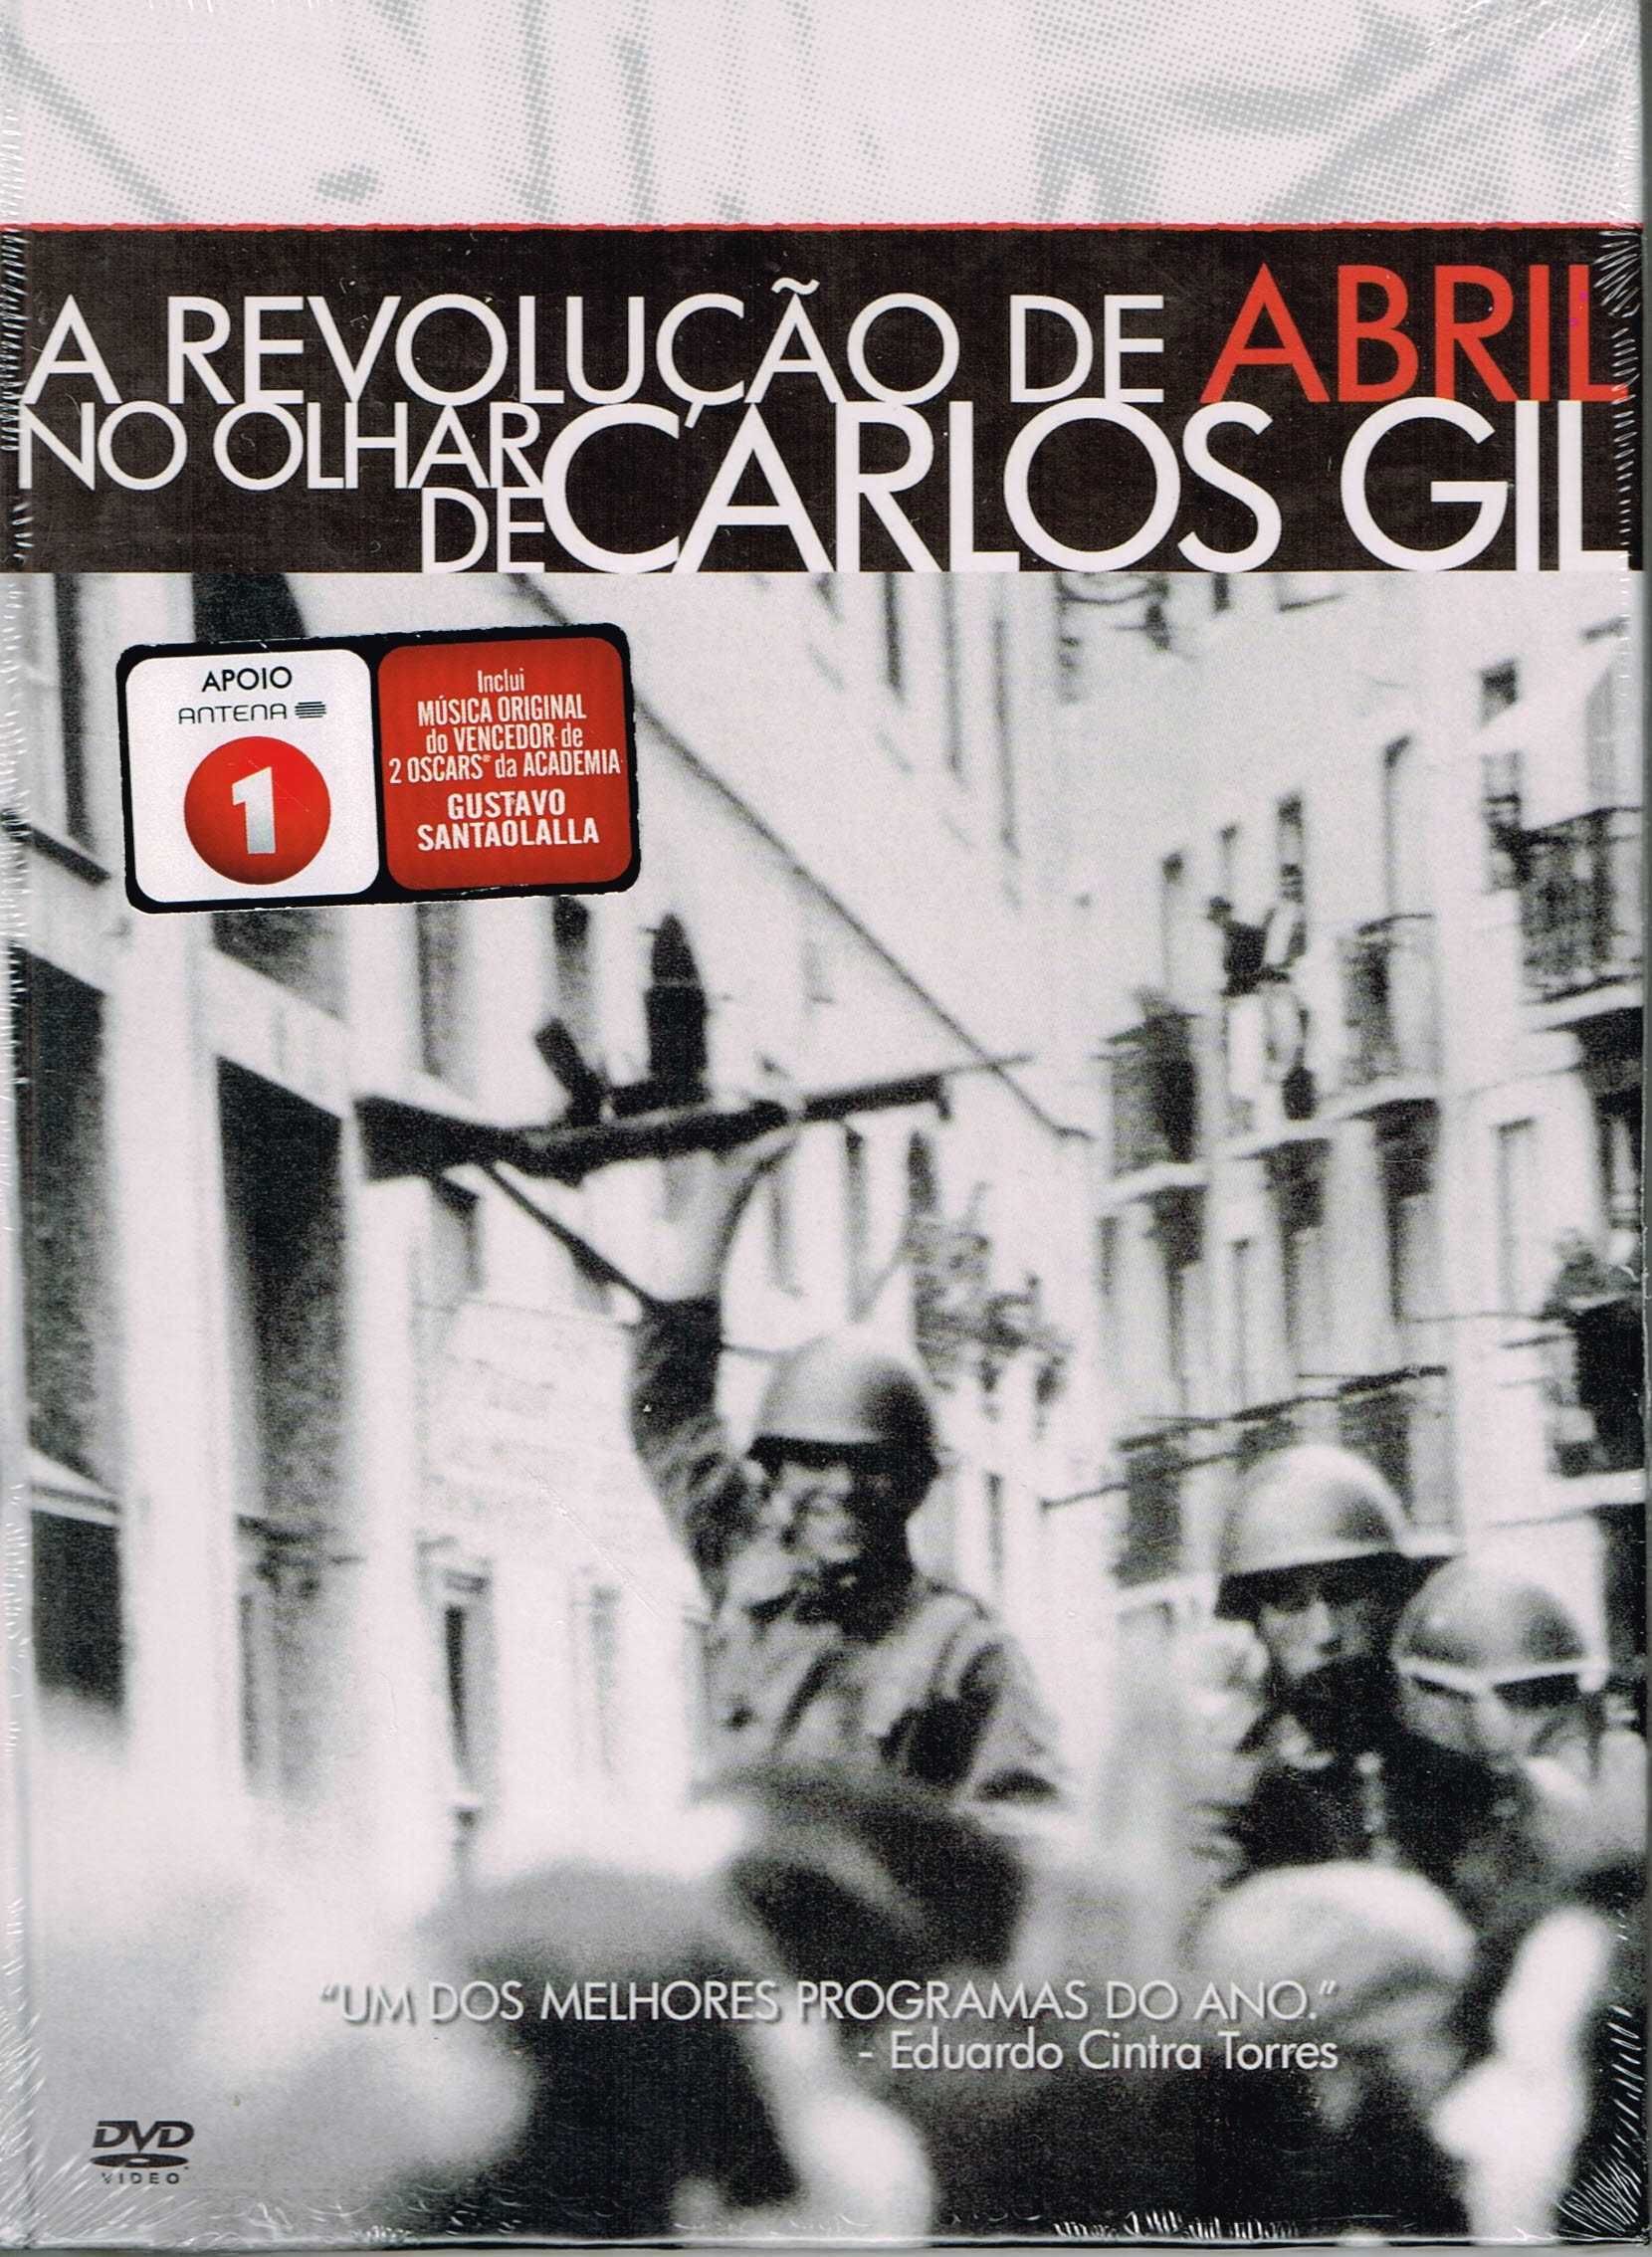 DVD: A Revolução de Abril no olhar de Carlos Gil - NOVO! SELADO!